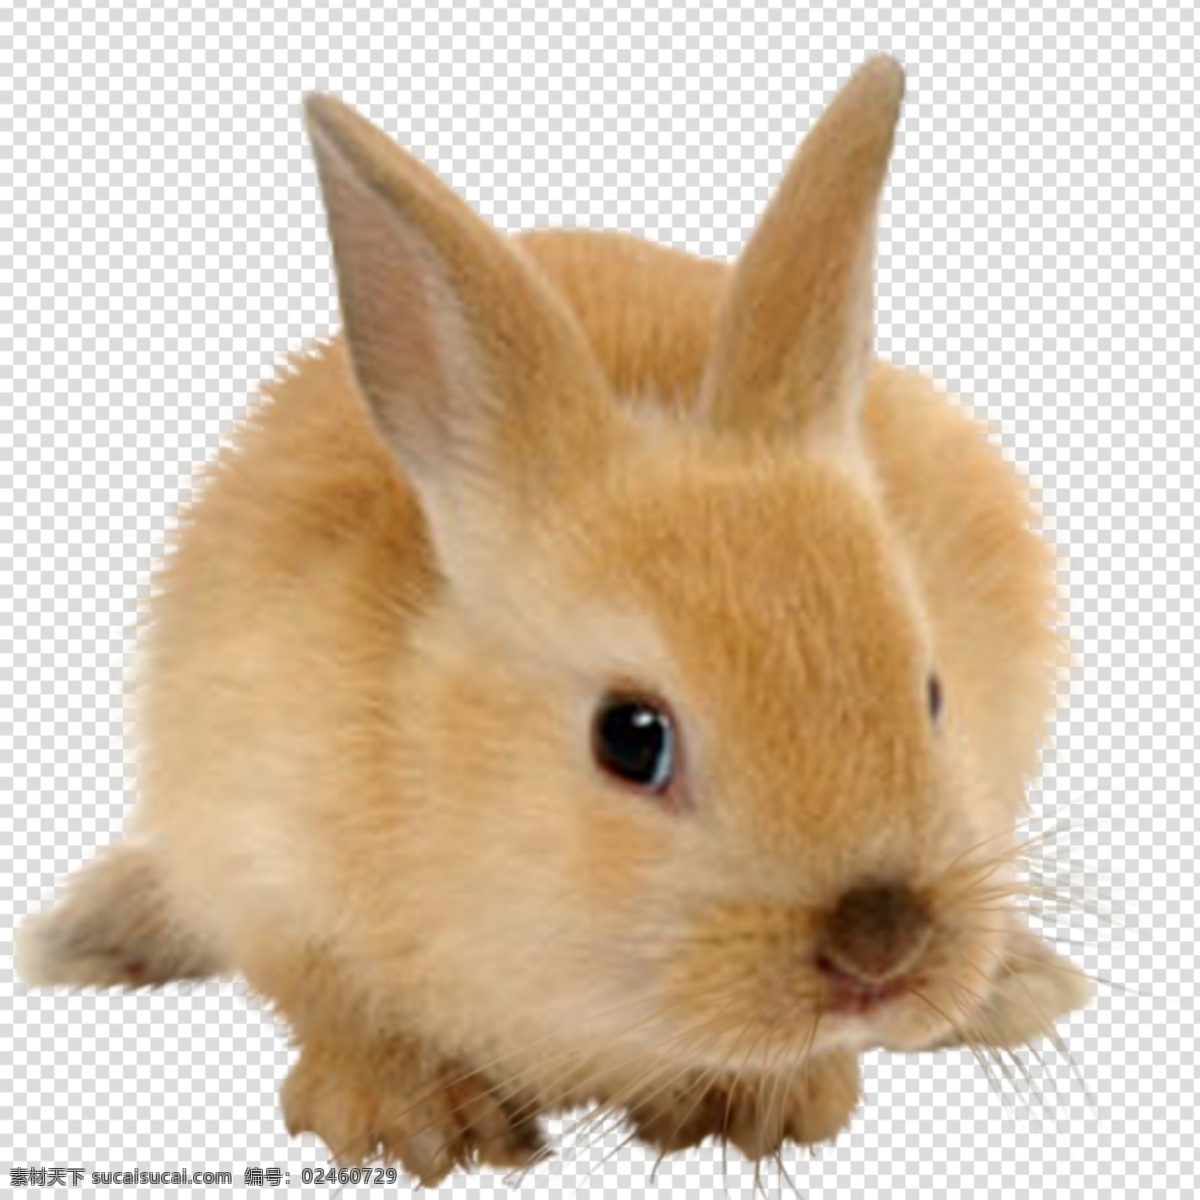 兔子图片 兔子 兔 可爱 小可爱 毛绒兔 透明底 动物 免抠图 psd分层图 分层图 免扣 透明 透明背景 分层